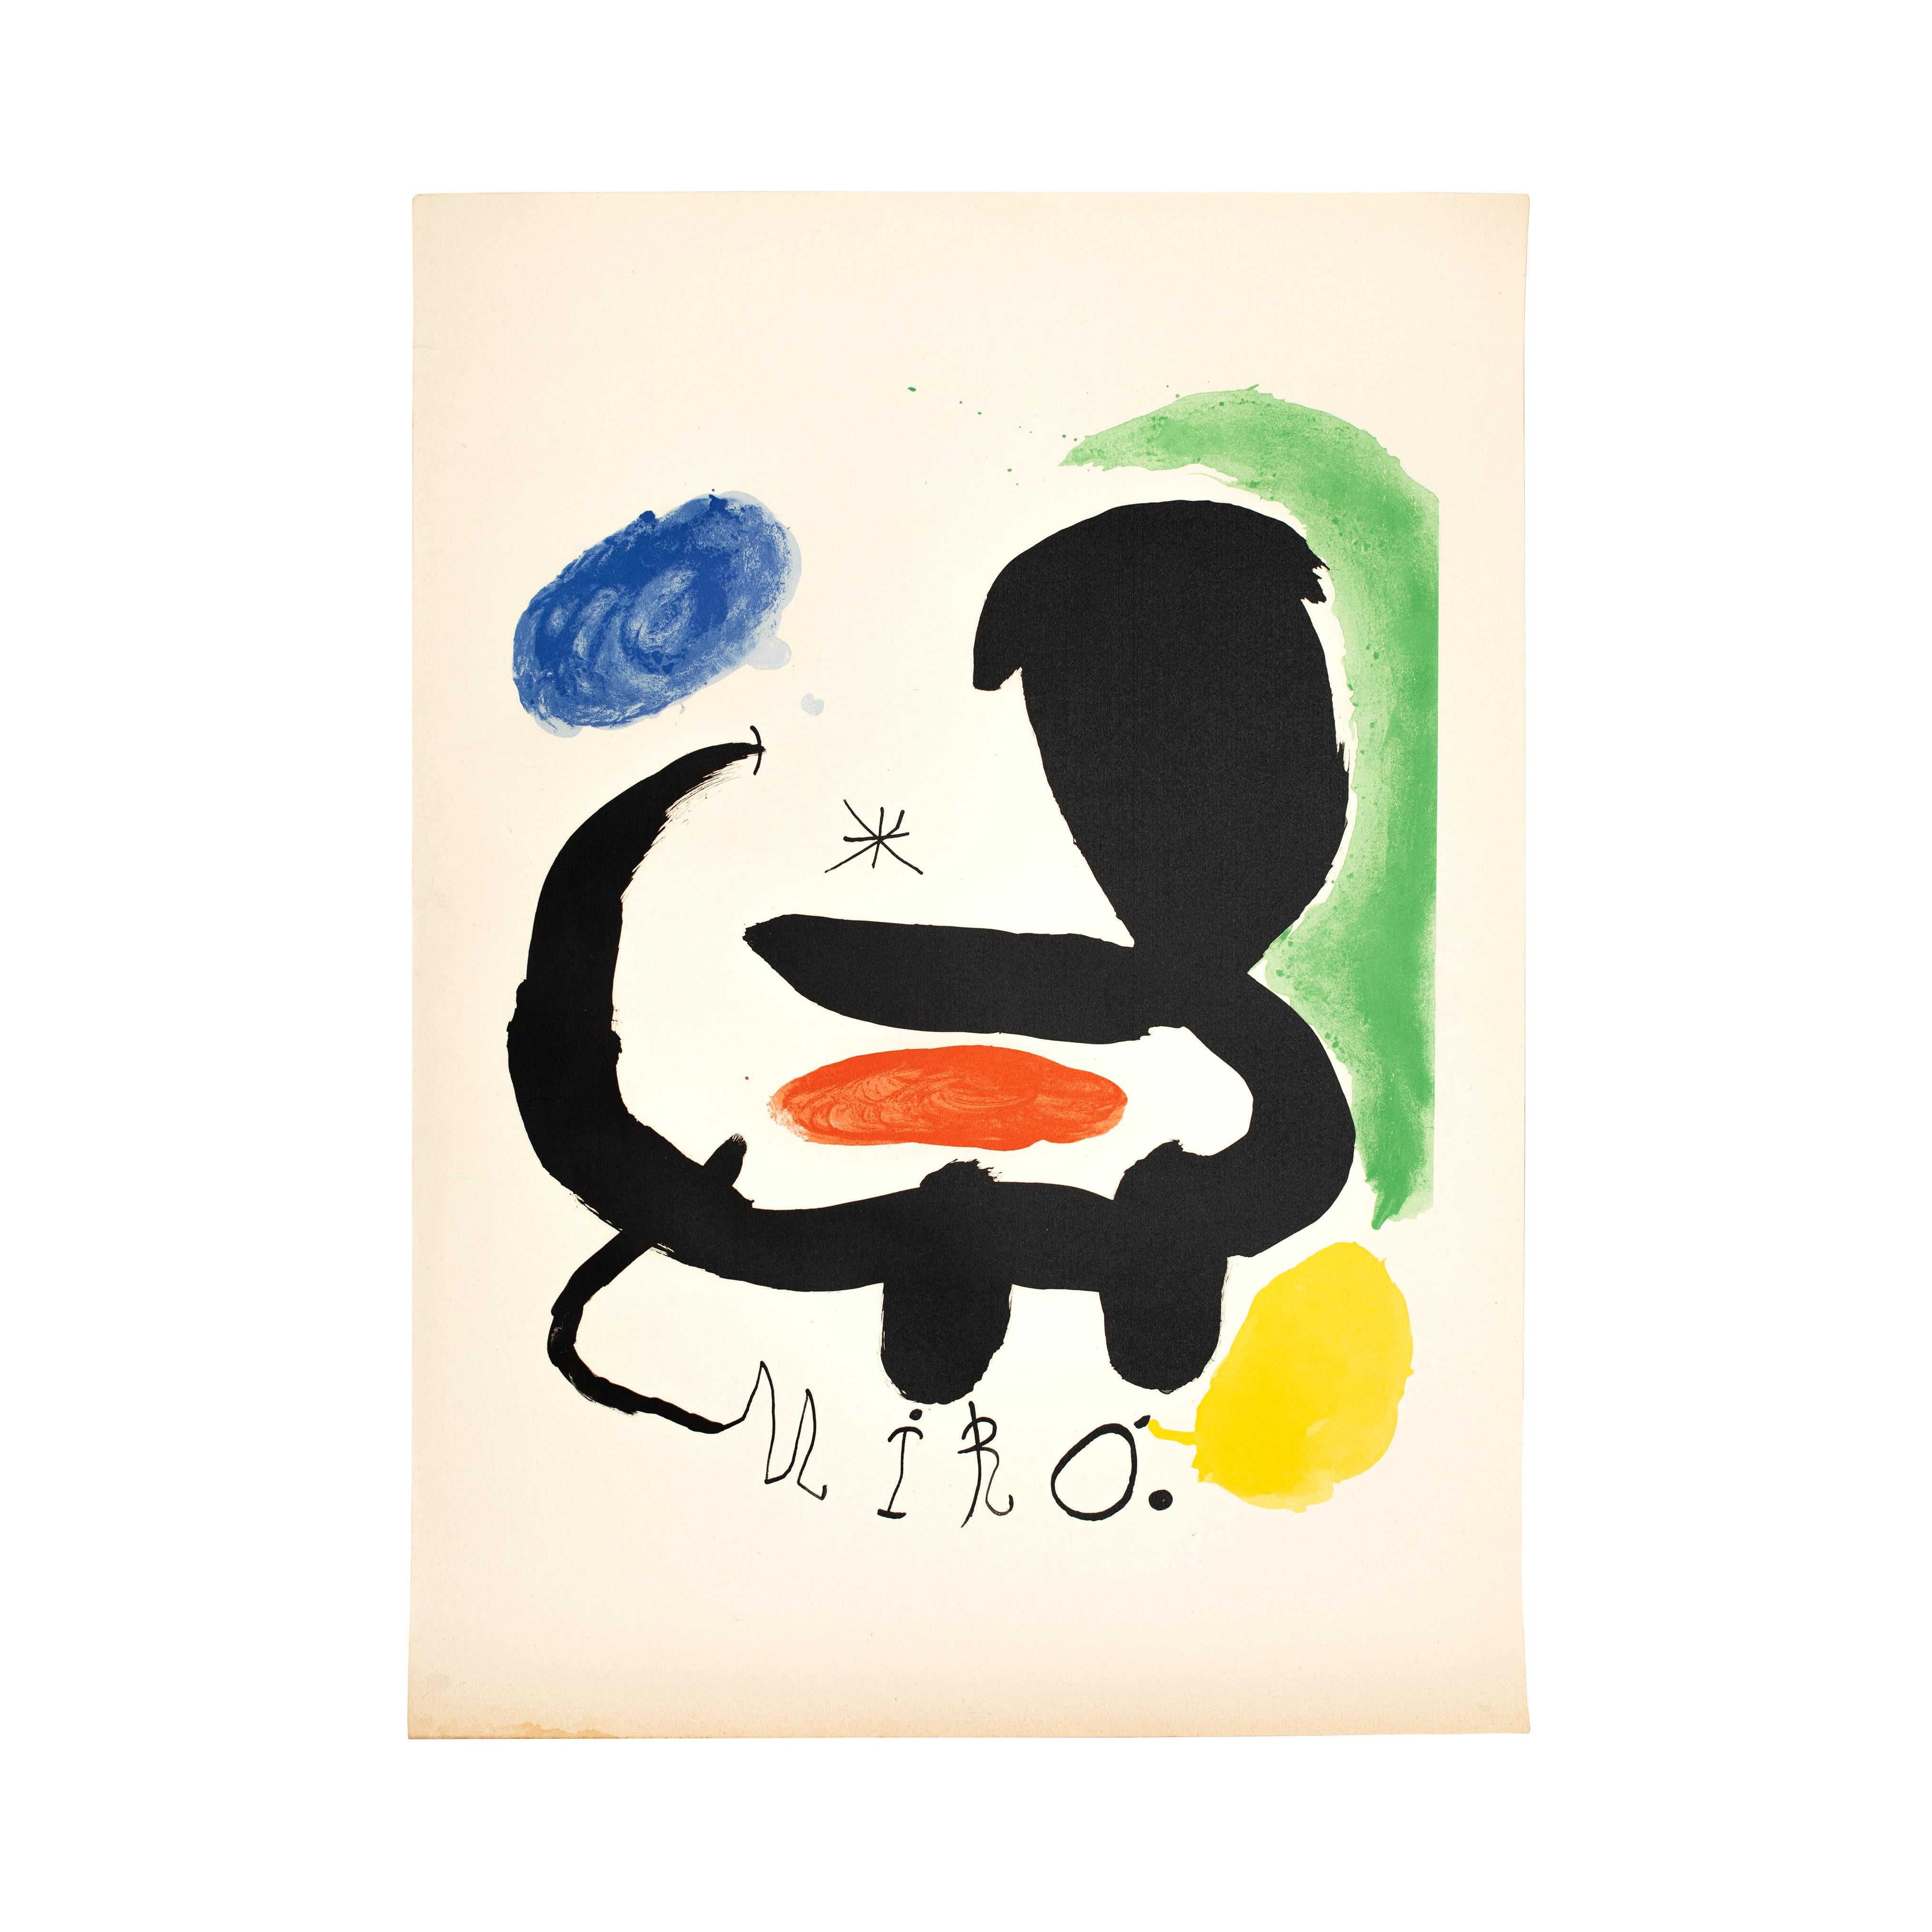 Lithographie de Joan Miro, vers 1950

Signé sur la pierre.

En état d'origine, avec une usure mineure conforme à l'âge et à l'utilisation, préservant une belle patine.

Joan Miró i Ferrà (catalan) 20 avril 1893 - 25 décembre 1983) est un